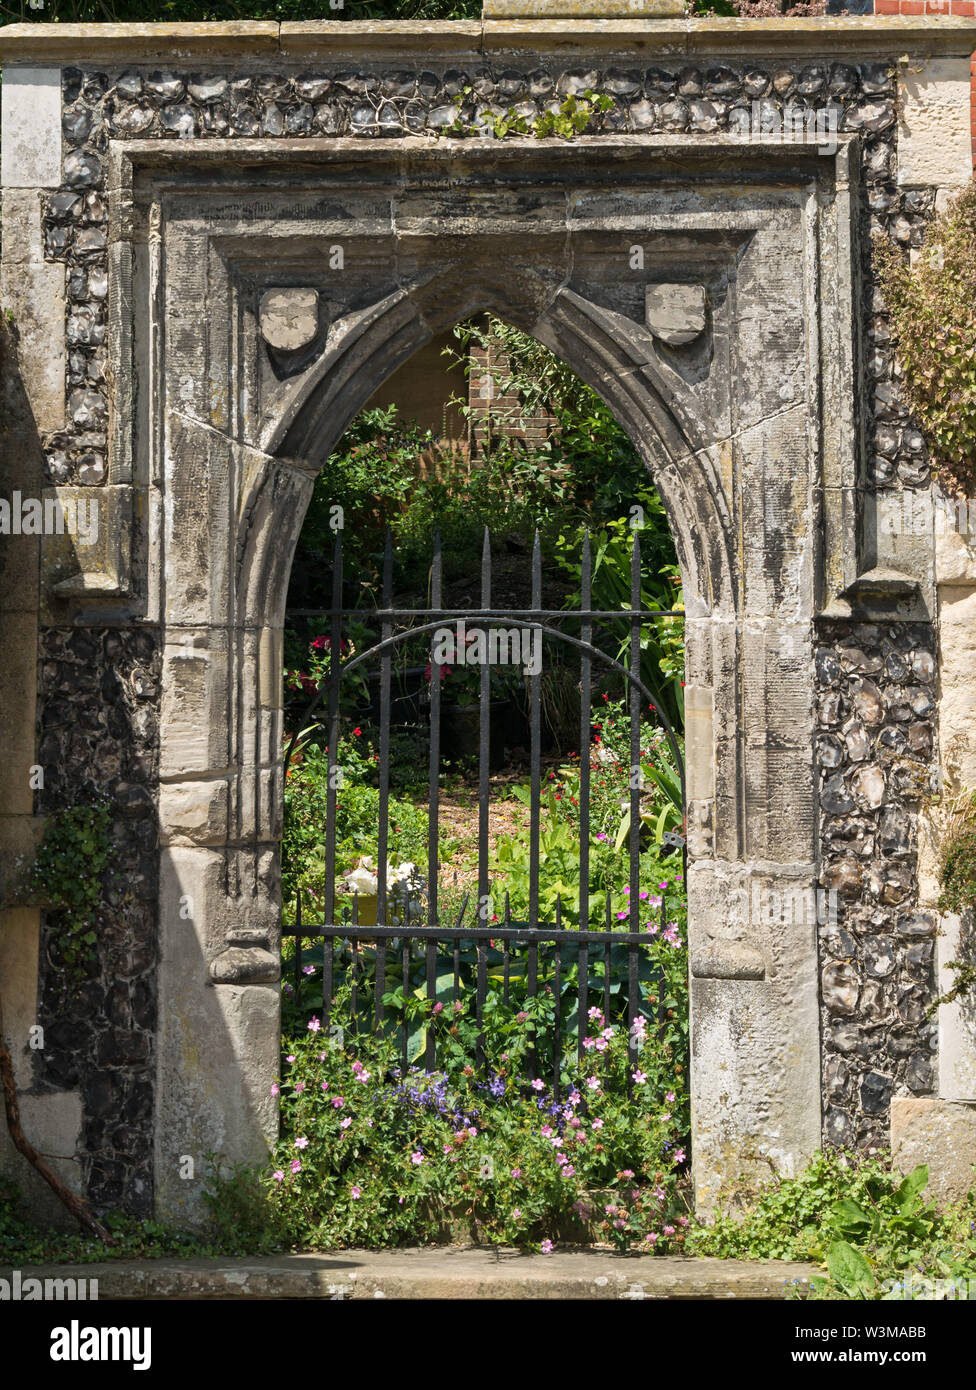 Ingresso al convento francescano Greyfriars (vedi anche Alamy image W3MABA), Friars Walk, Lewes, East Sussex, Inghilterra, REGNO UNITO. Foto Stock